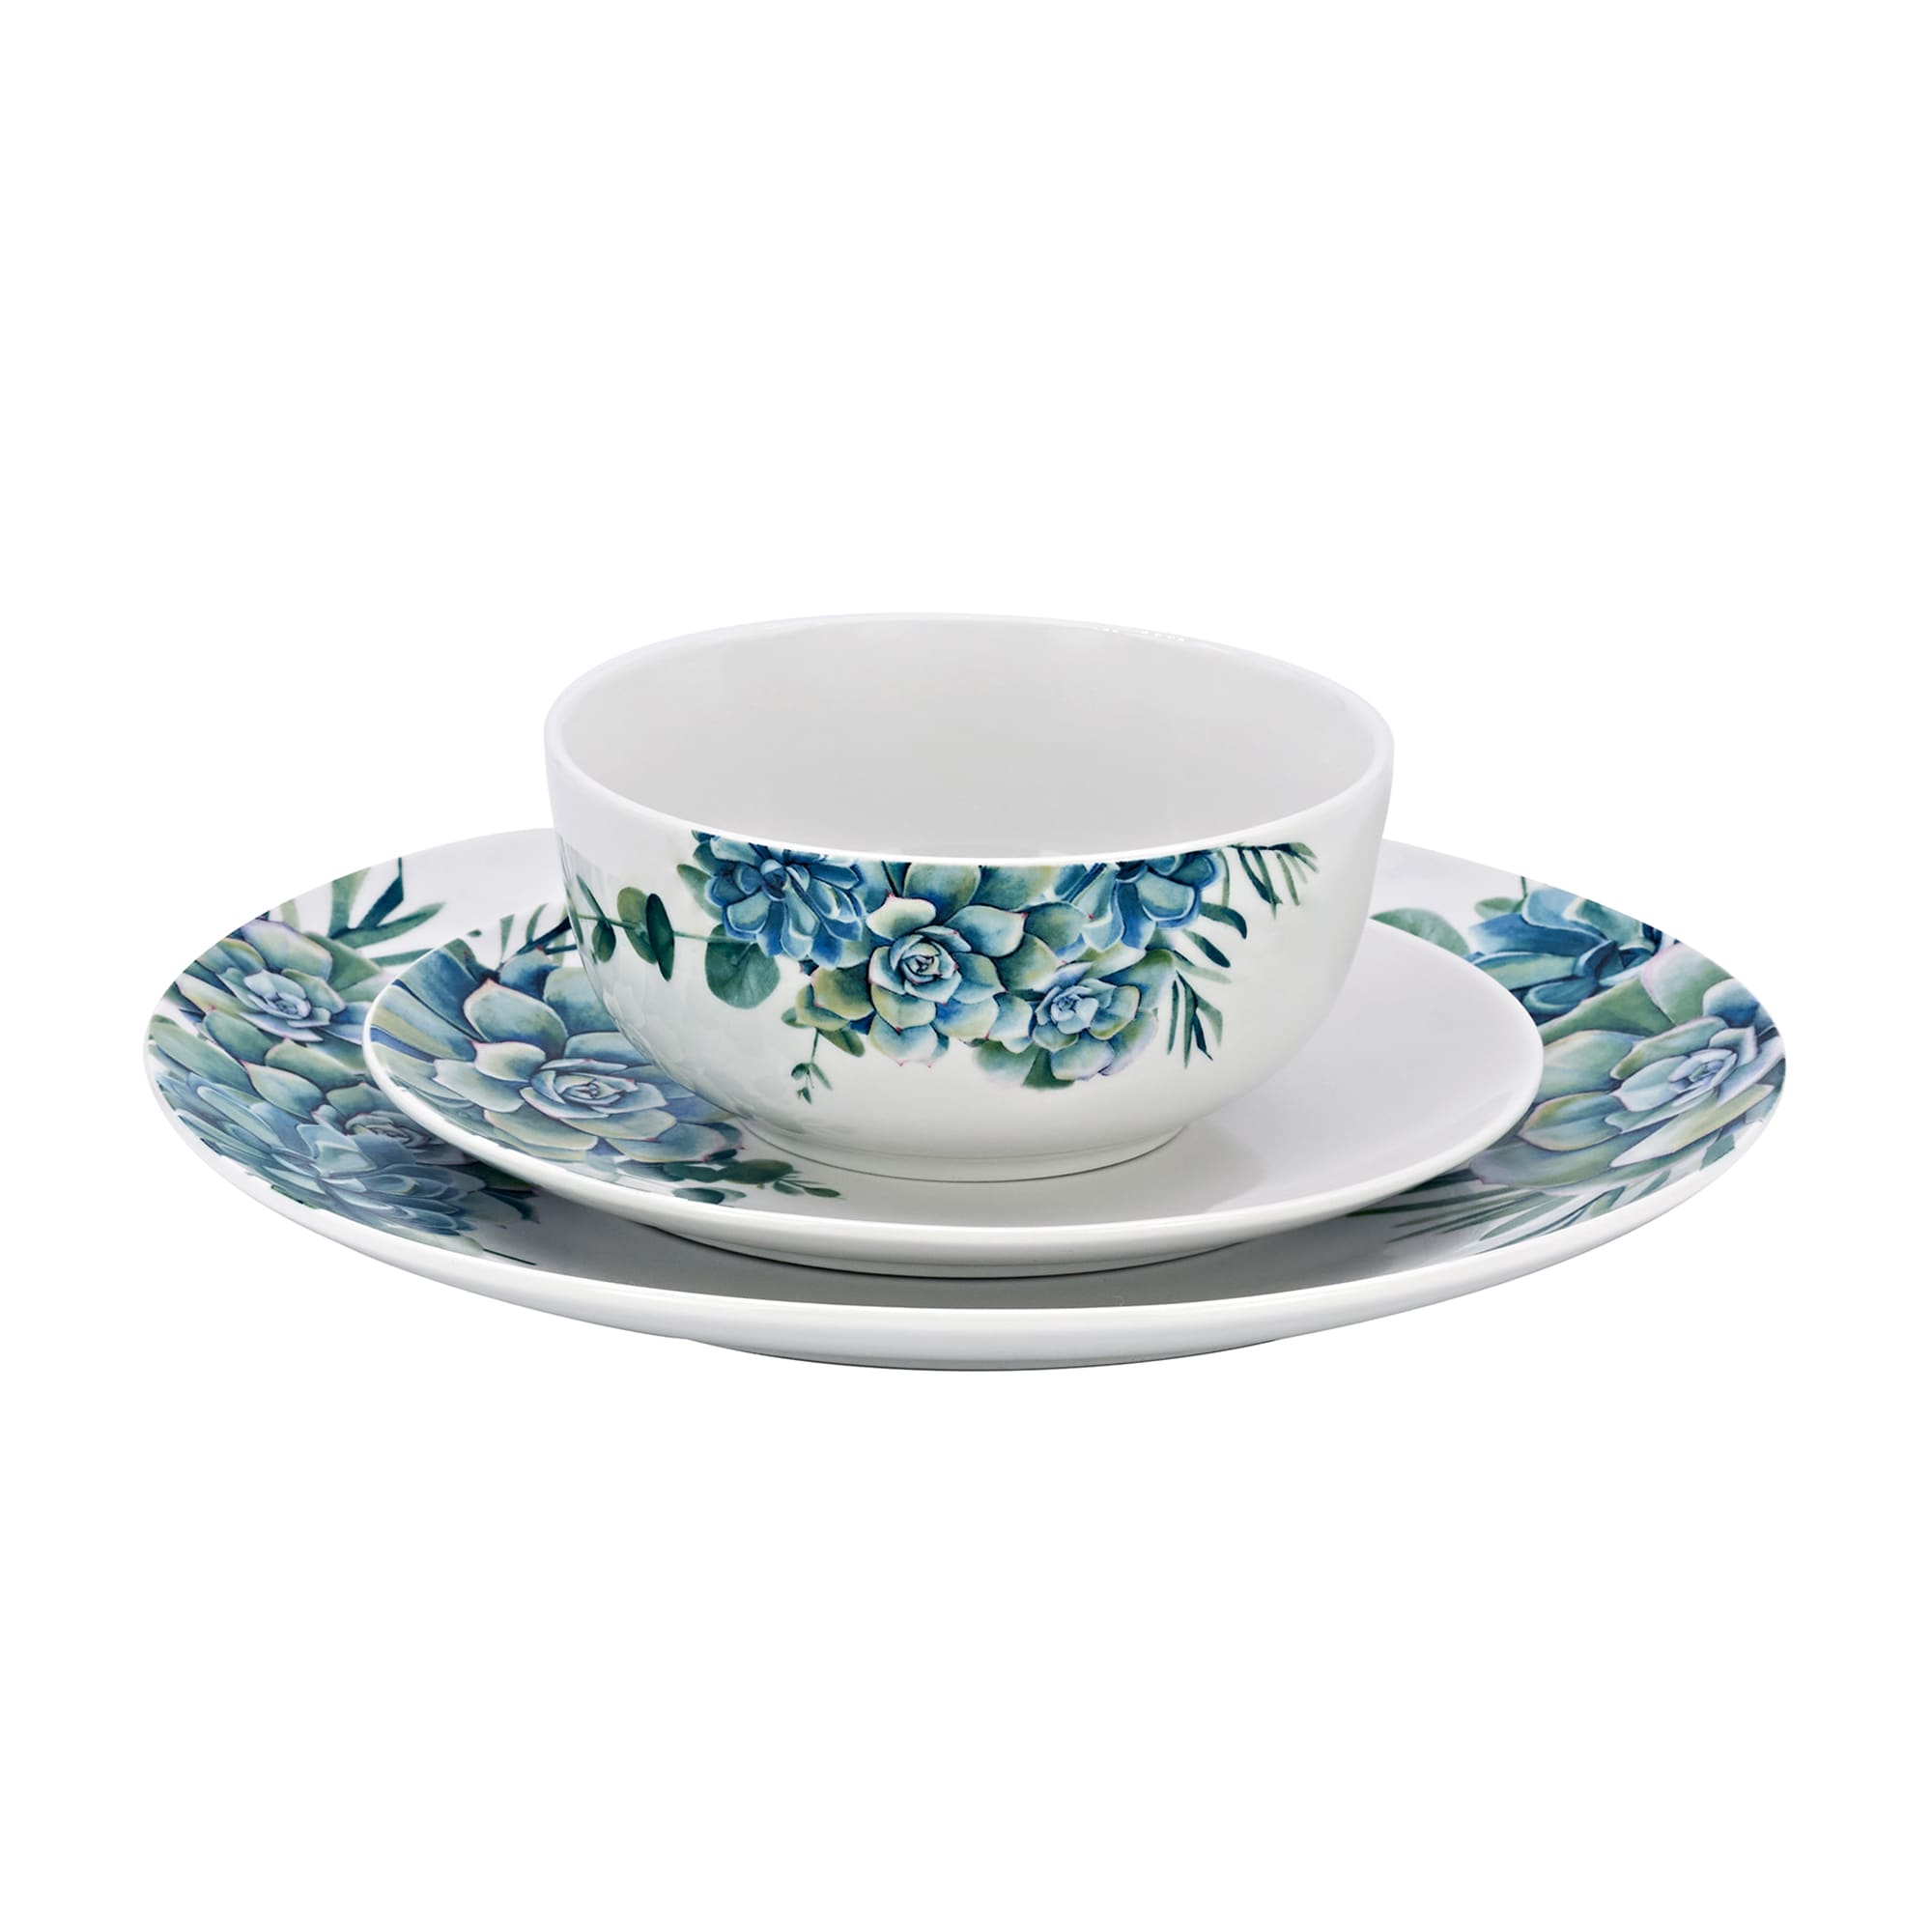 Godinger 12-pc. Service for 4 Ross-Simons | Succulent Dinnerware Set Porcelain